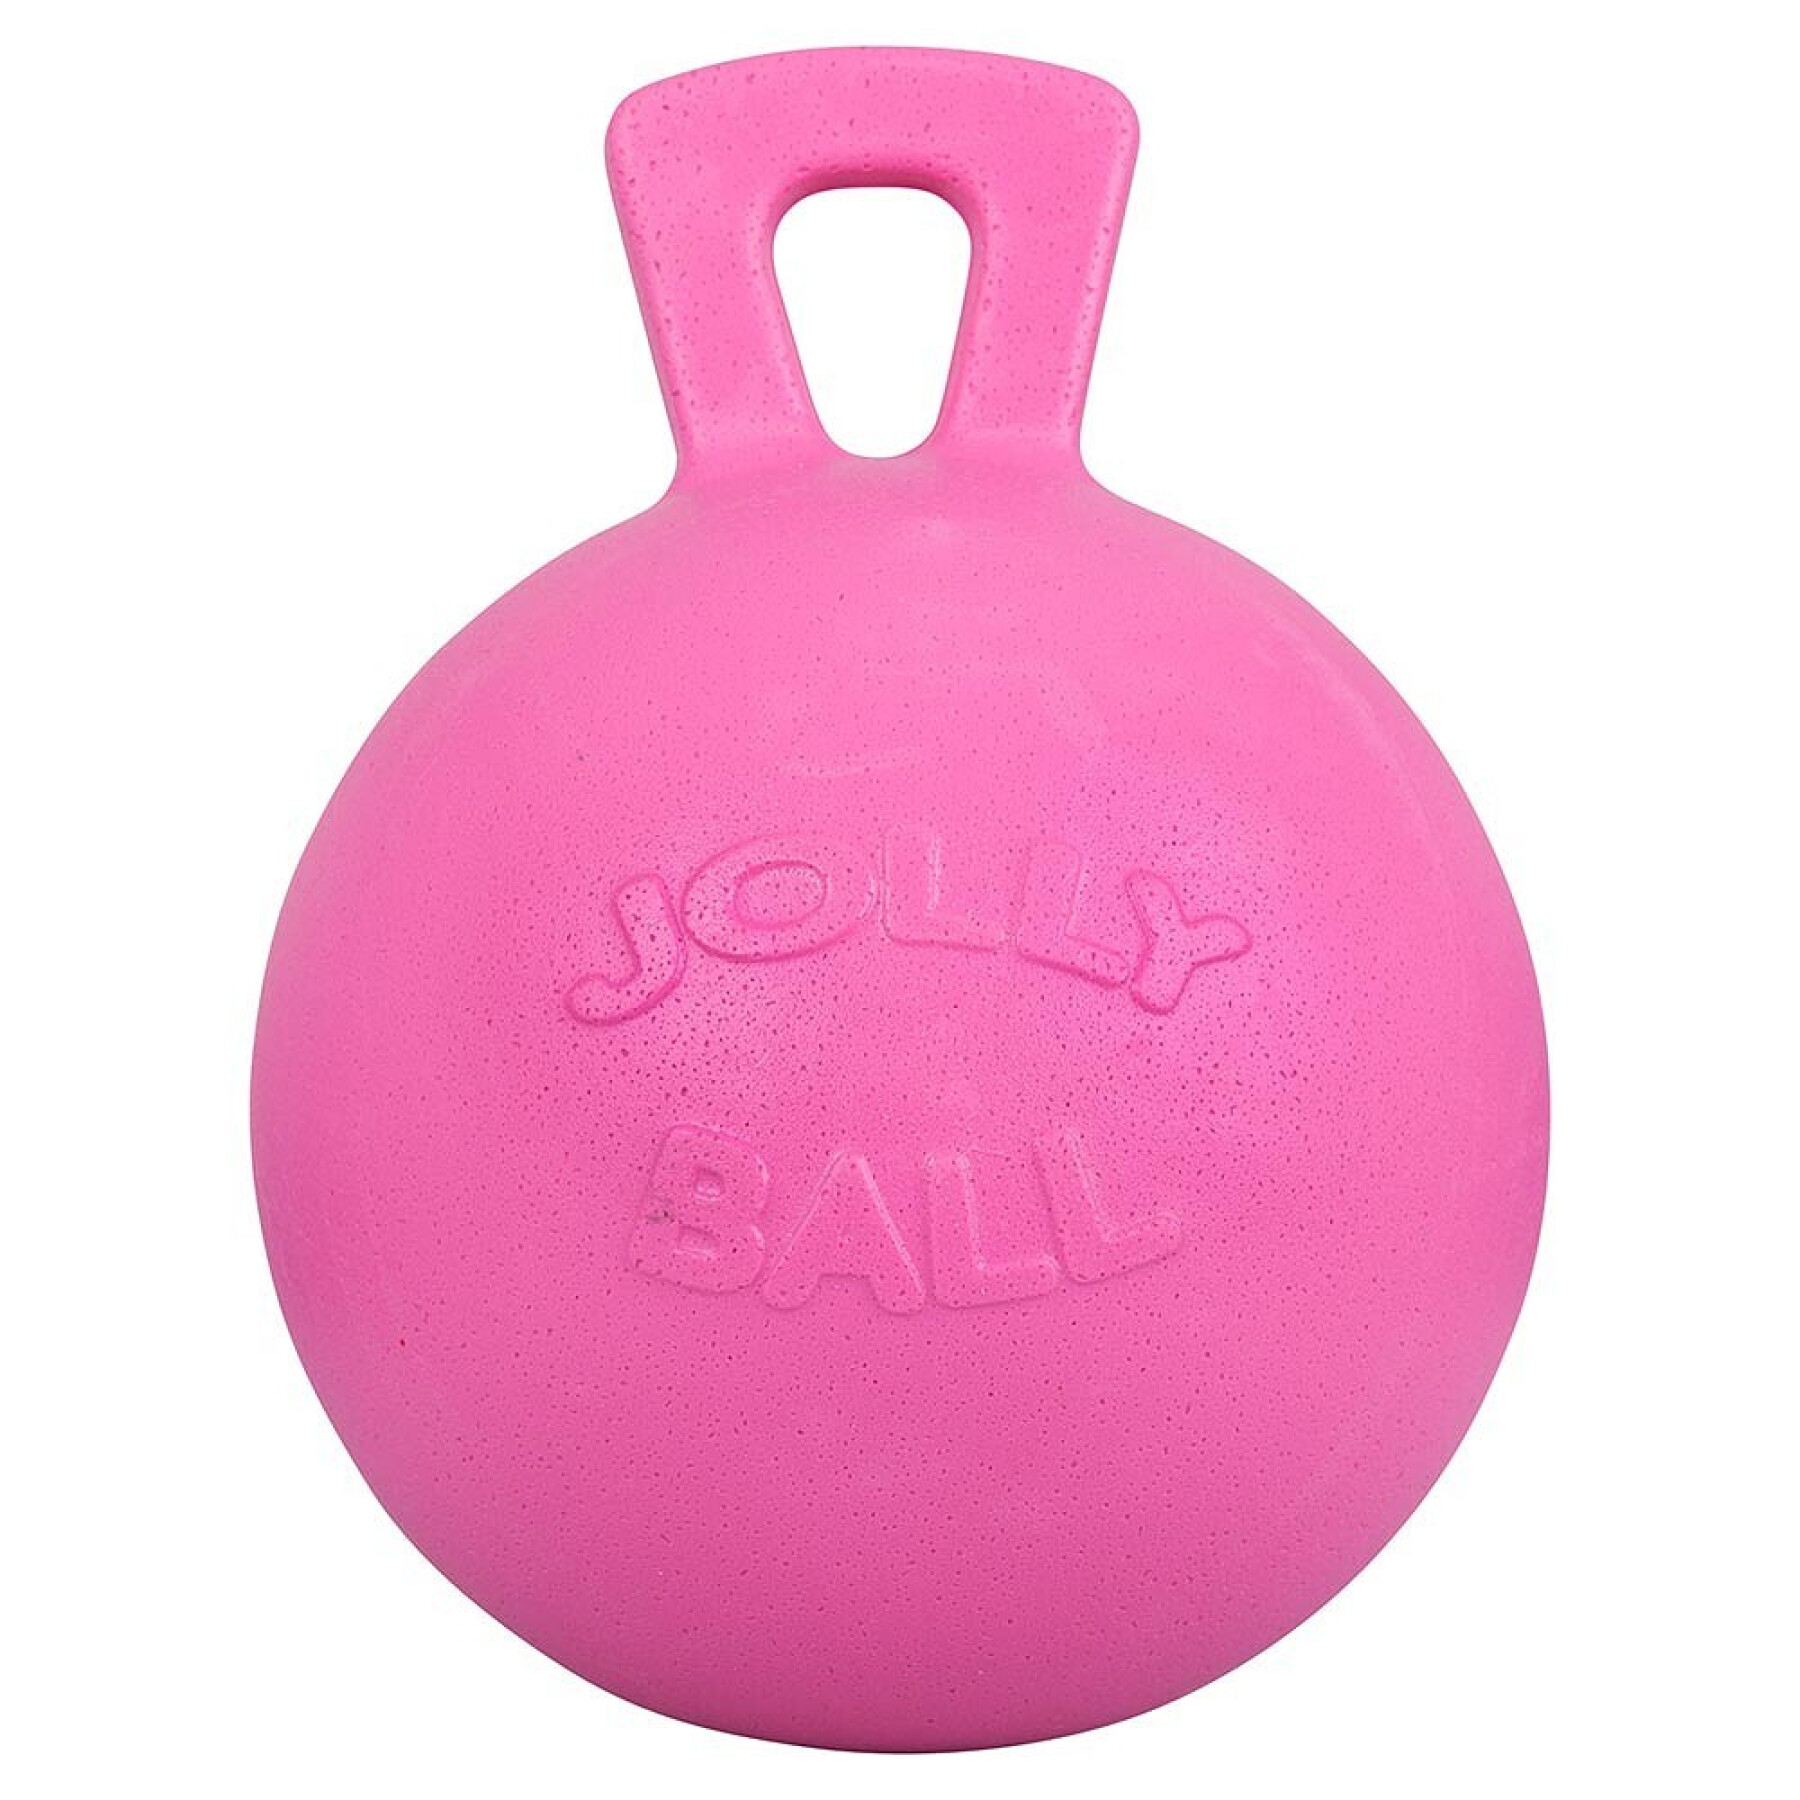 Ballon mit Griff für Pferde Jolly Bubble Gum 10"